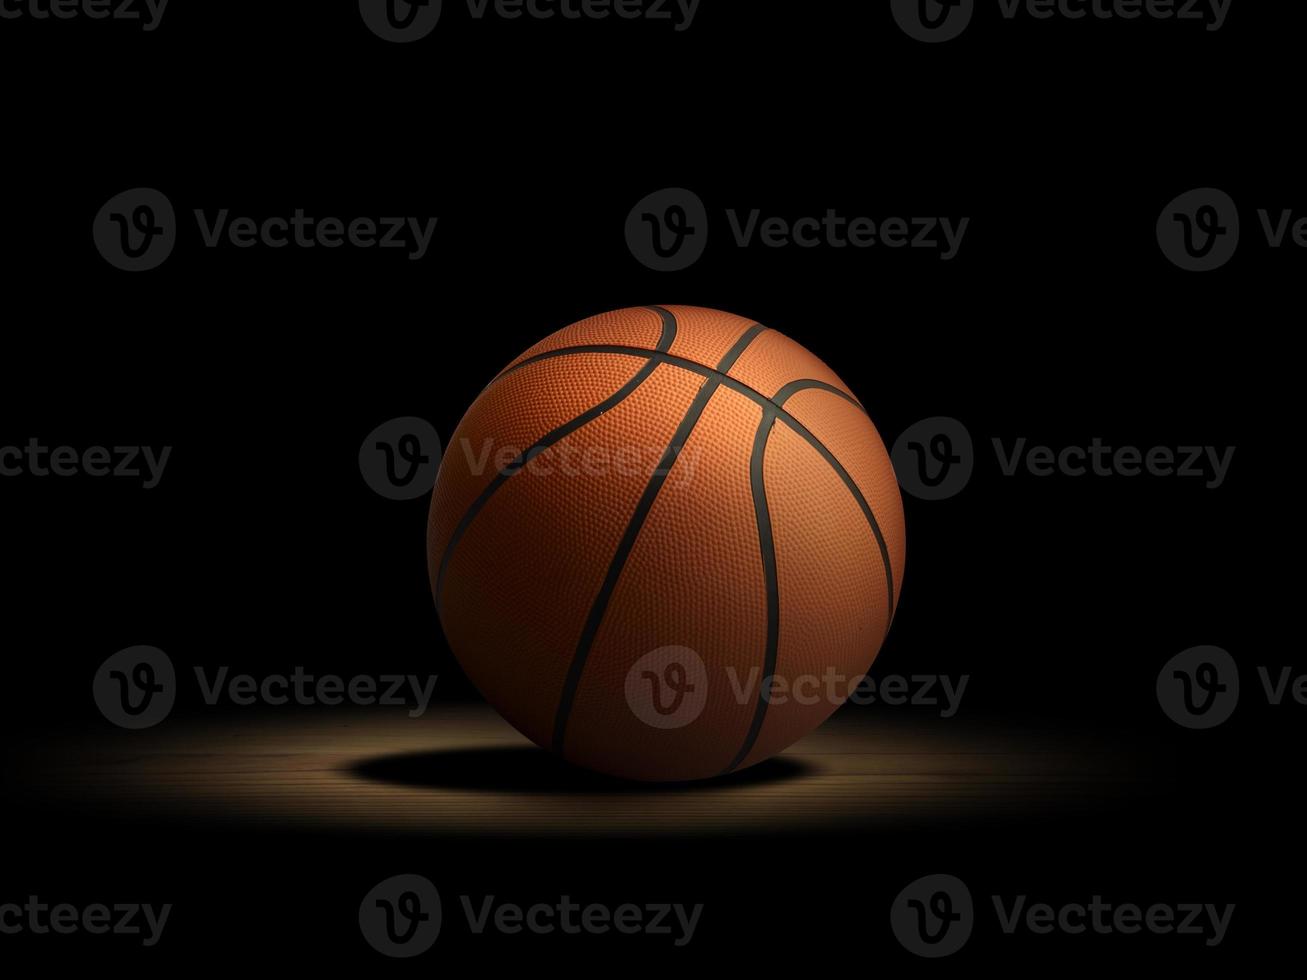 pelota de baloncesto en el parquet con fondo negro foto